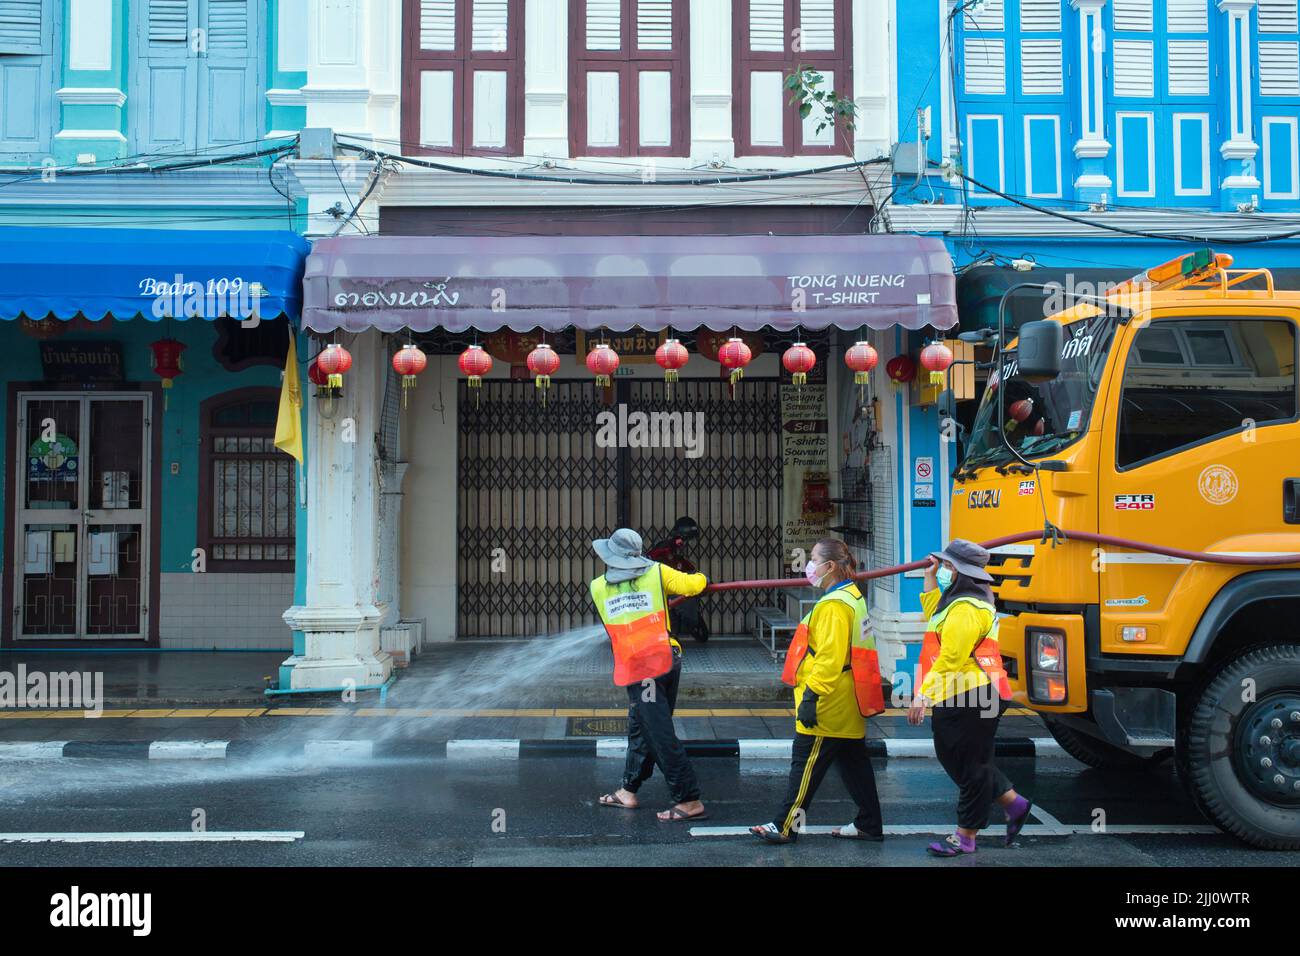 Al mattino presto, i lavoratori municipali puliscono Thalang Road nella zona della città vecchia di Phuket, Thailandia, le sue case sino-portoghesi un'attrazione turistica Foto Stock